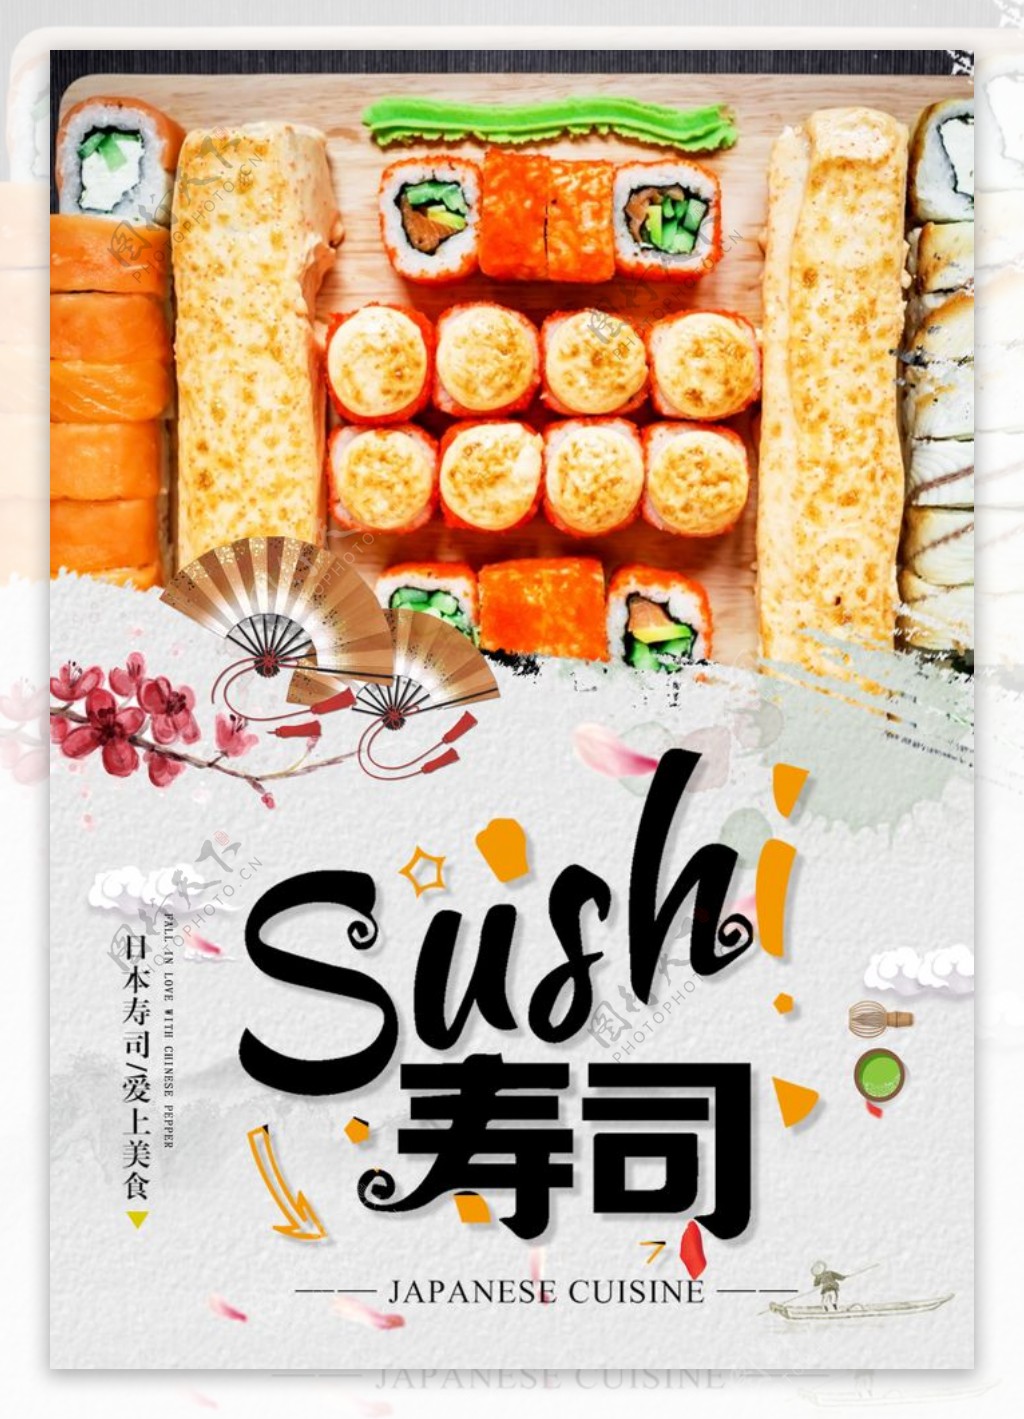 寿司海报